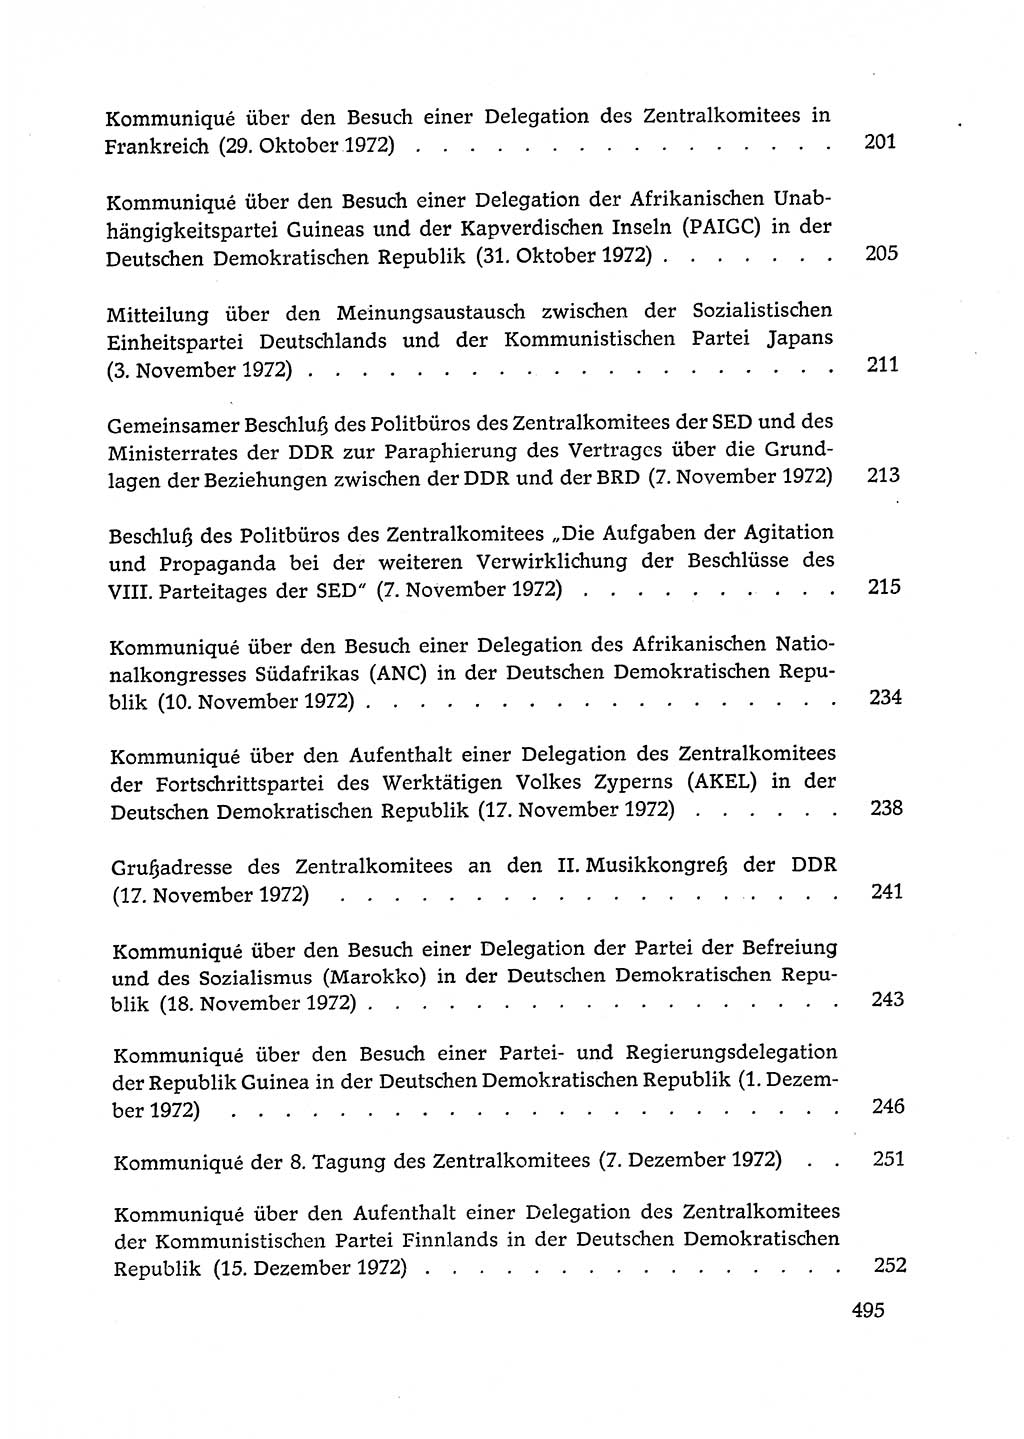 Dokumente der Sozialistischen Einheitspartei Deutschlands (SED) [Deutsche Demokratische Republik (DDR)] 1972-1973, Seite 495 (Dok. SED DDR 1972-1973, S. 495)